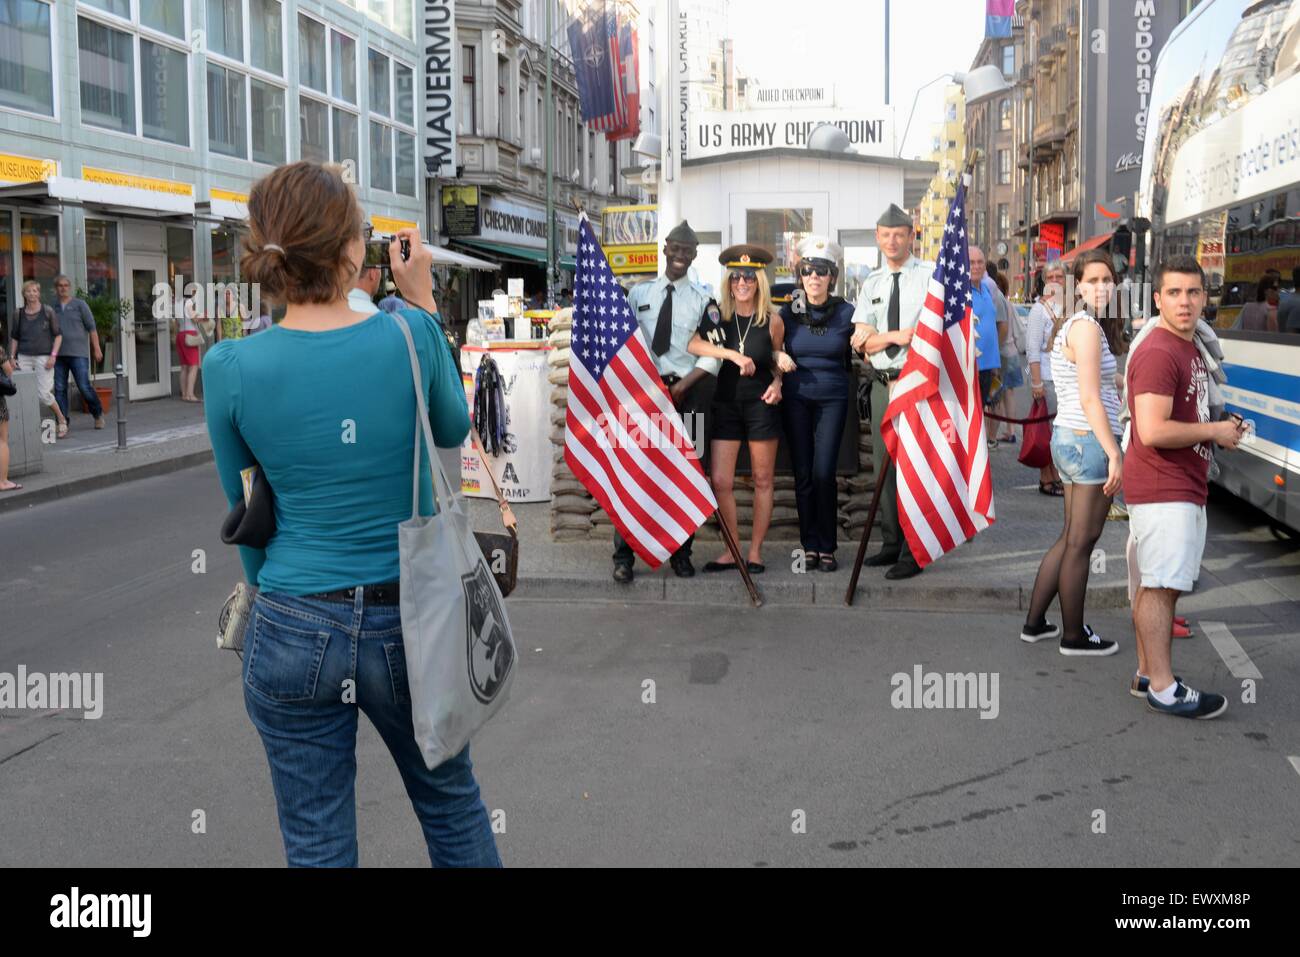 Checkpoint Charlie, Berlin, Allemagne. Touristes prenant des photos avec des militaires. Banque D'Images